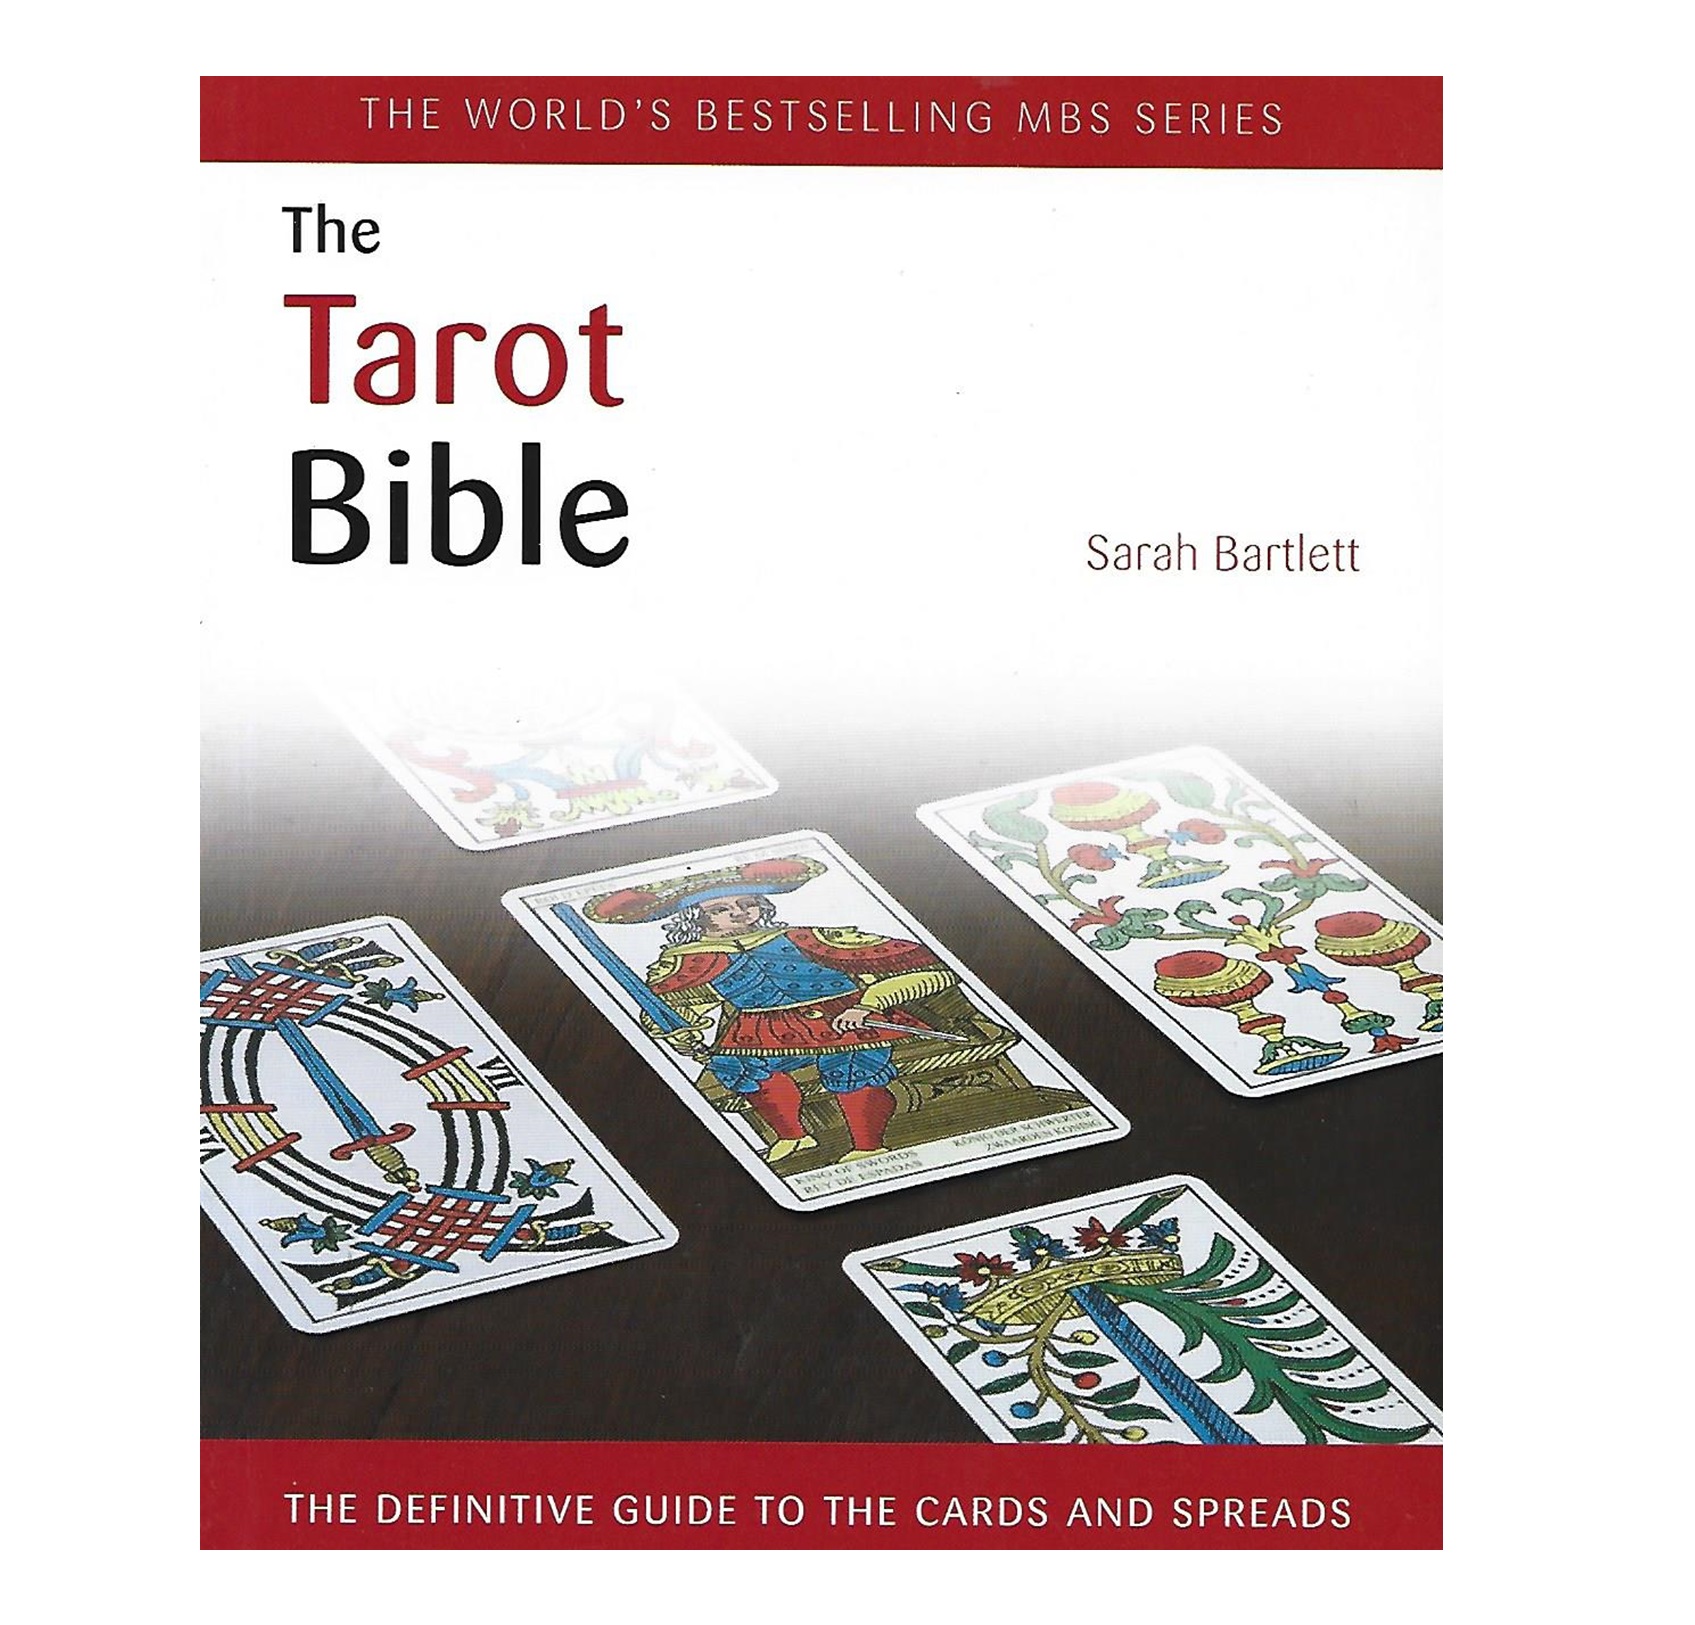 THE TAROT BIBLE